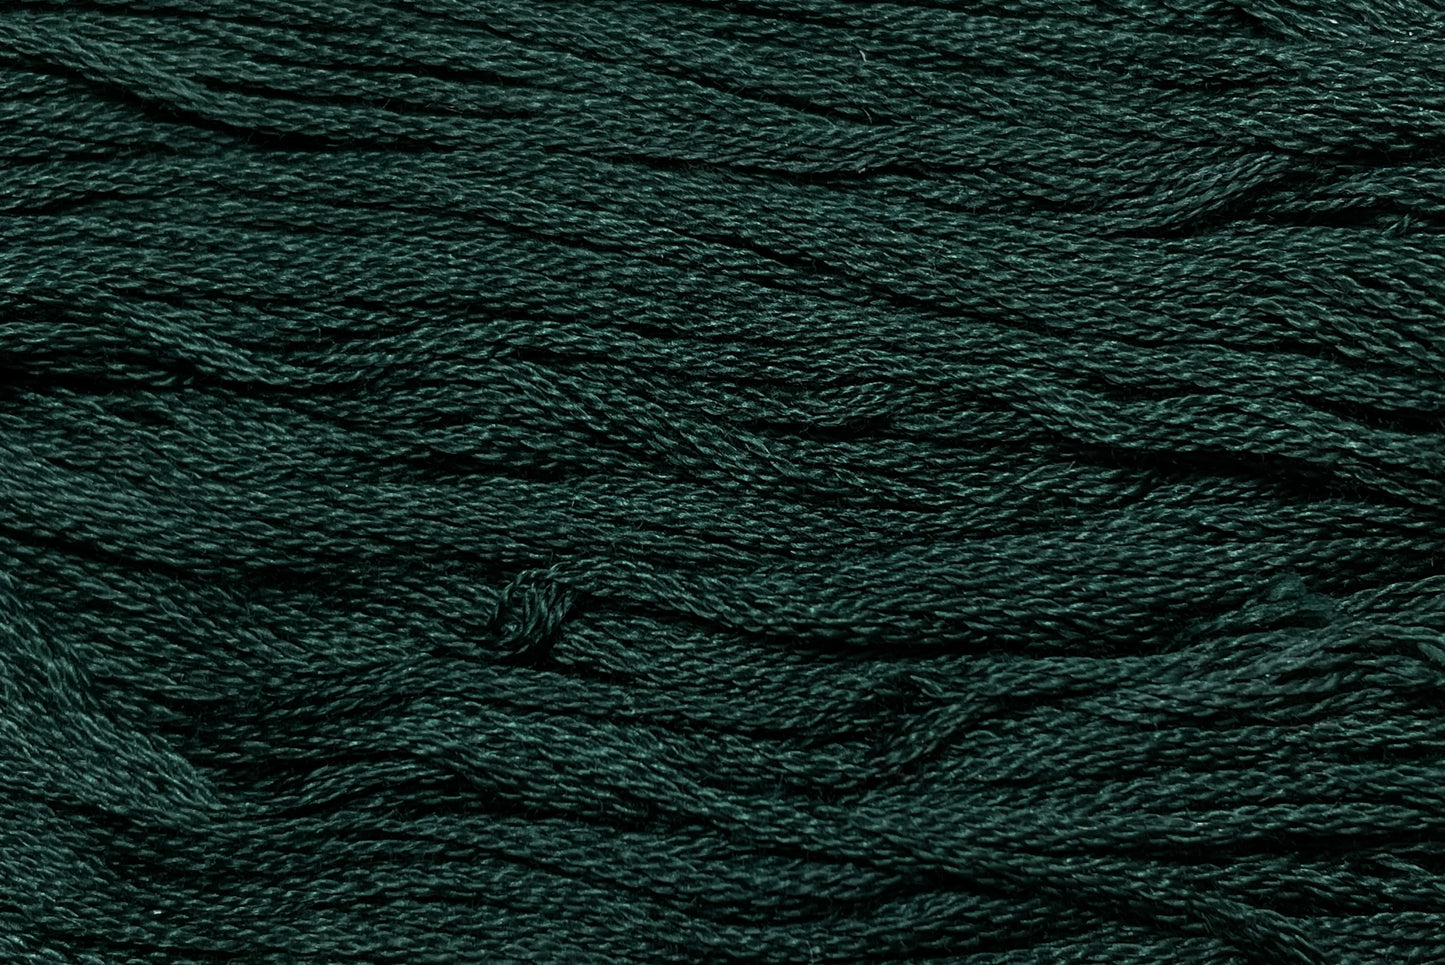 Blue Spruce - Gentle Arts Cotton Thread - 5 yard Skein - Cross Stitch Floss, Thread & Floss, Thread & Floss, The Crafty Grimalkin - A Cross Stitch Store